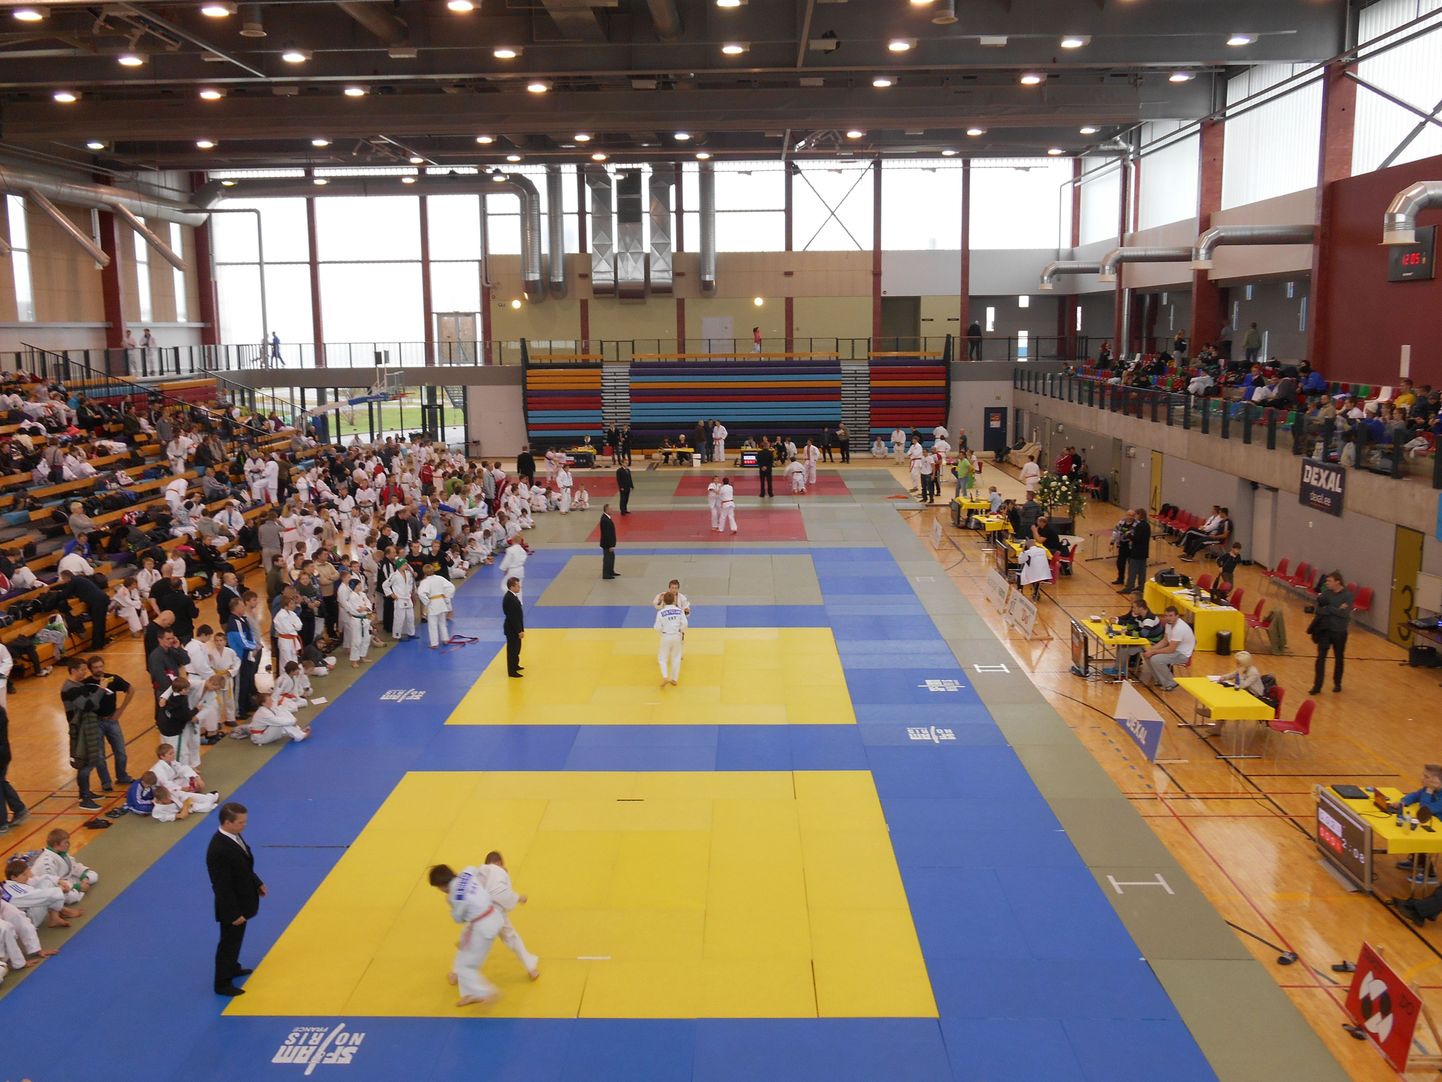 Kaimo Keeraku mälesturniir judos.